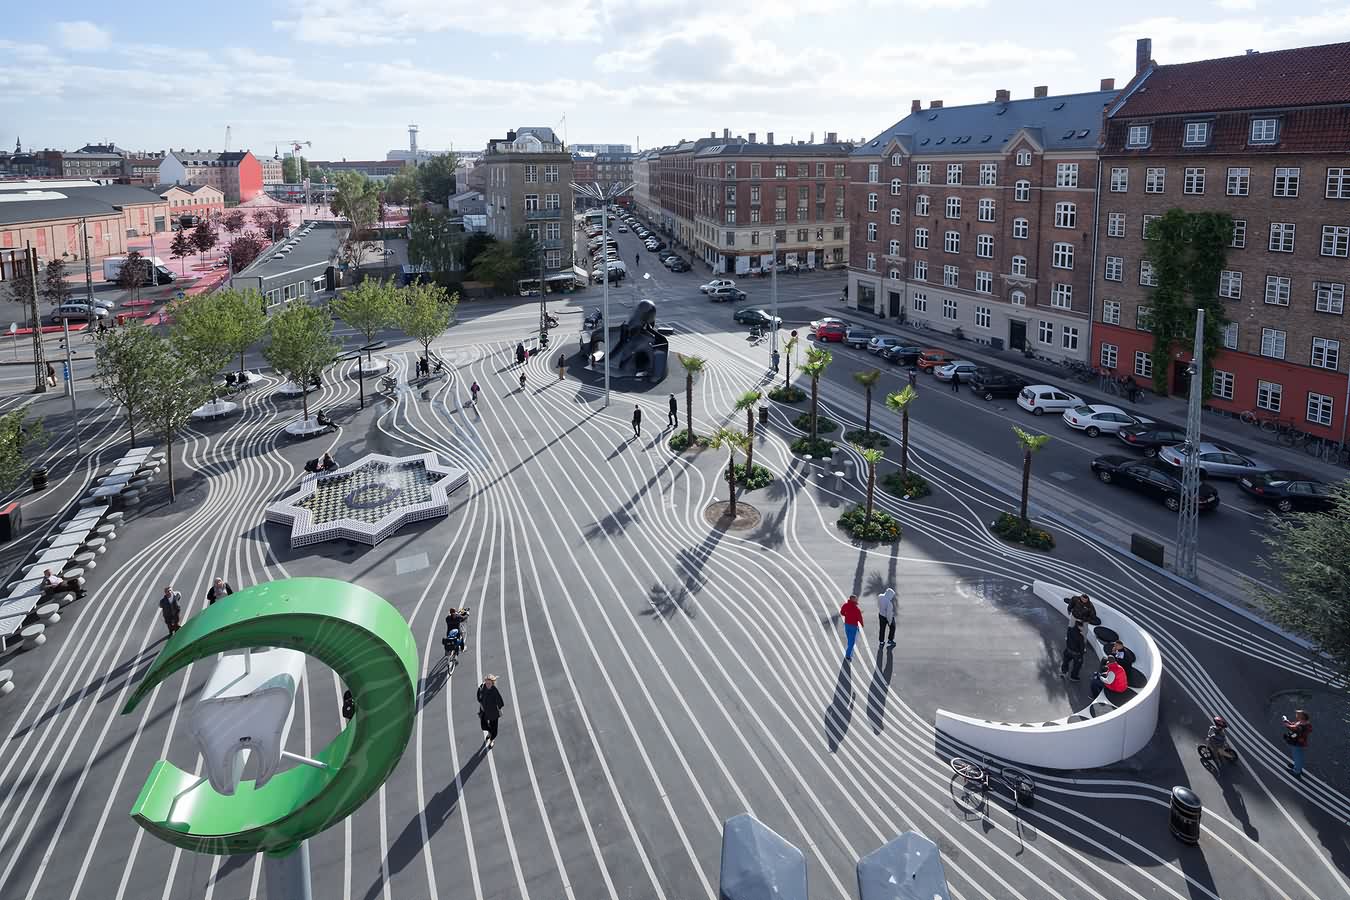 丹麦哥本哈根市政厅广场铜雕牛龙喷泉 2020年2月 编辑类图片. 图片 包括有 资本, 拱道, 市政, 斯堪的纳维亚语 - 174928935